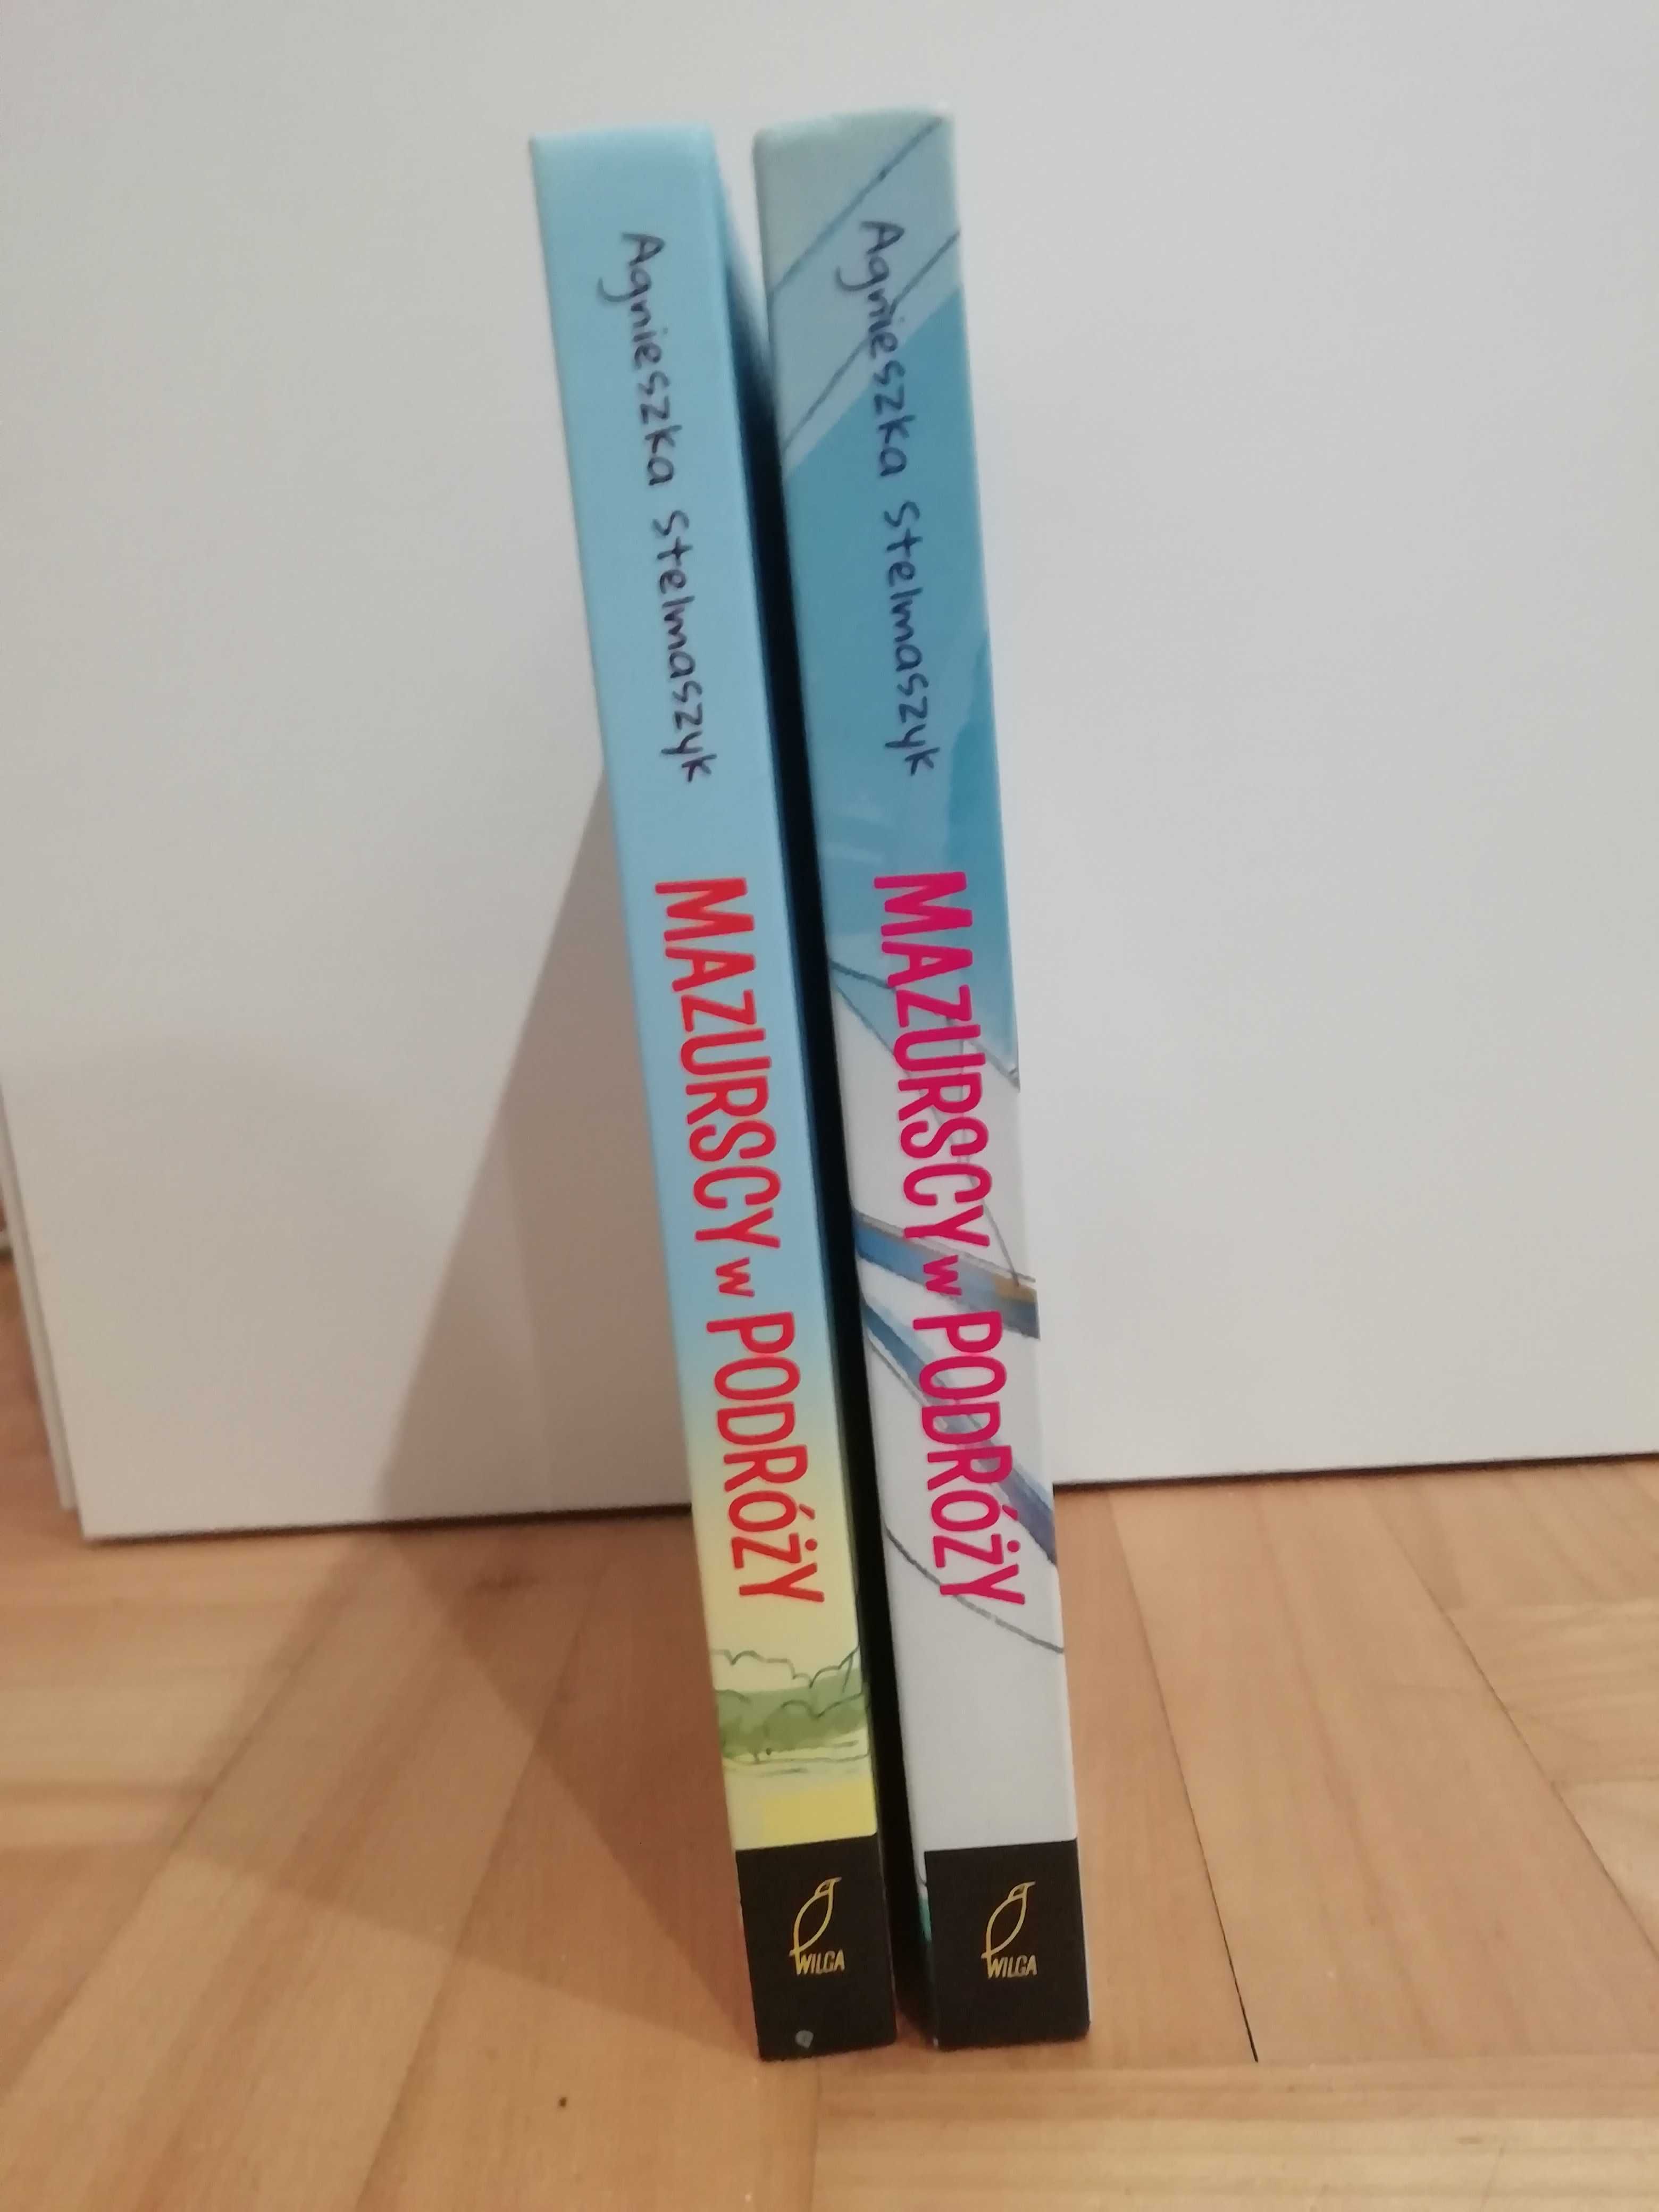 Książka "Mazurscy w podróży" tom 1 i 2